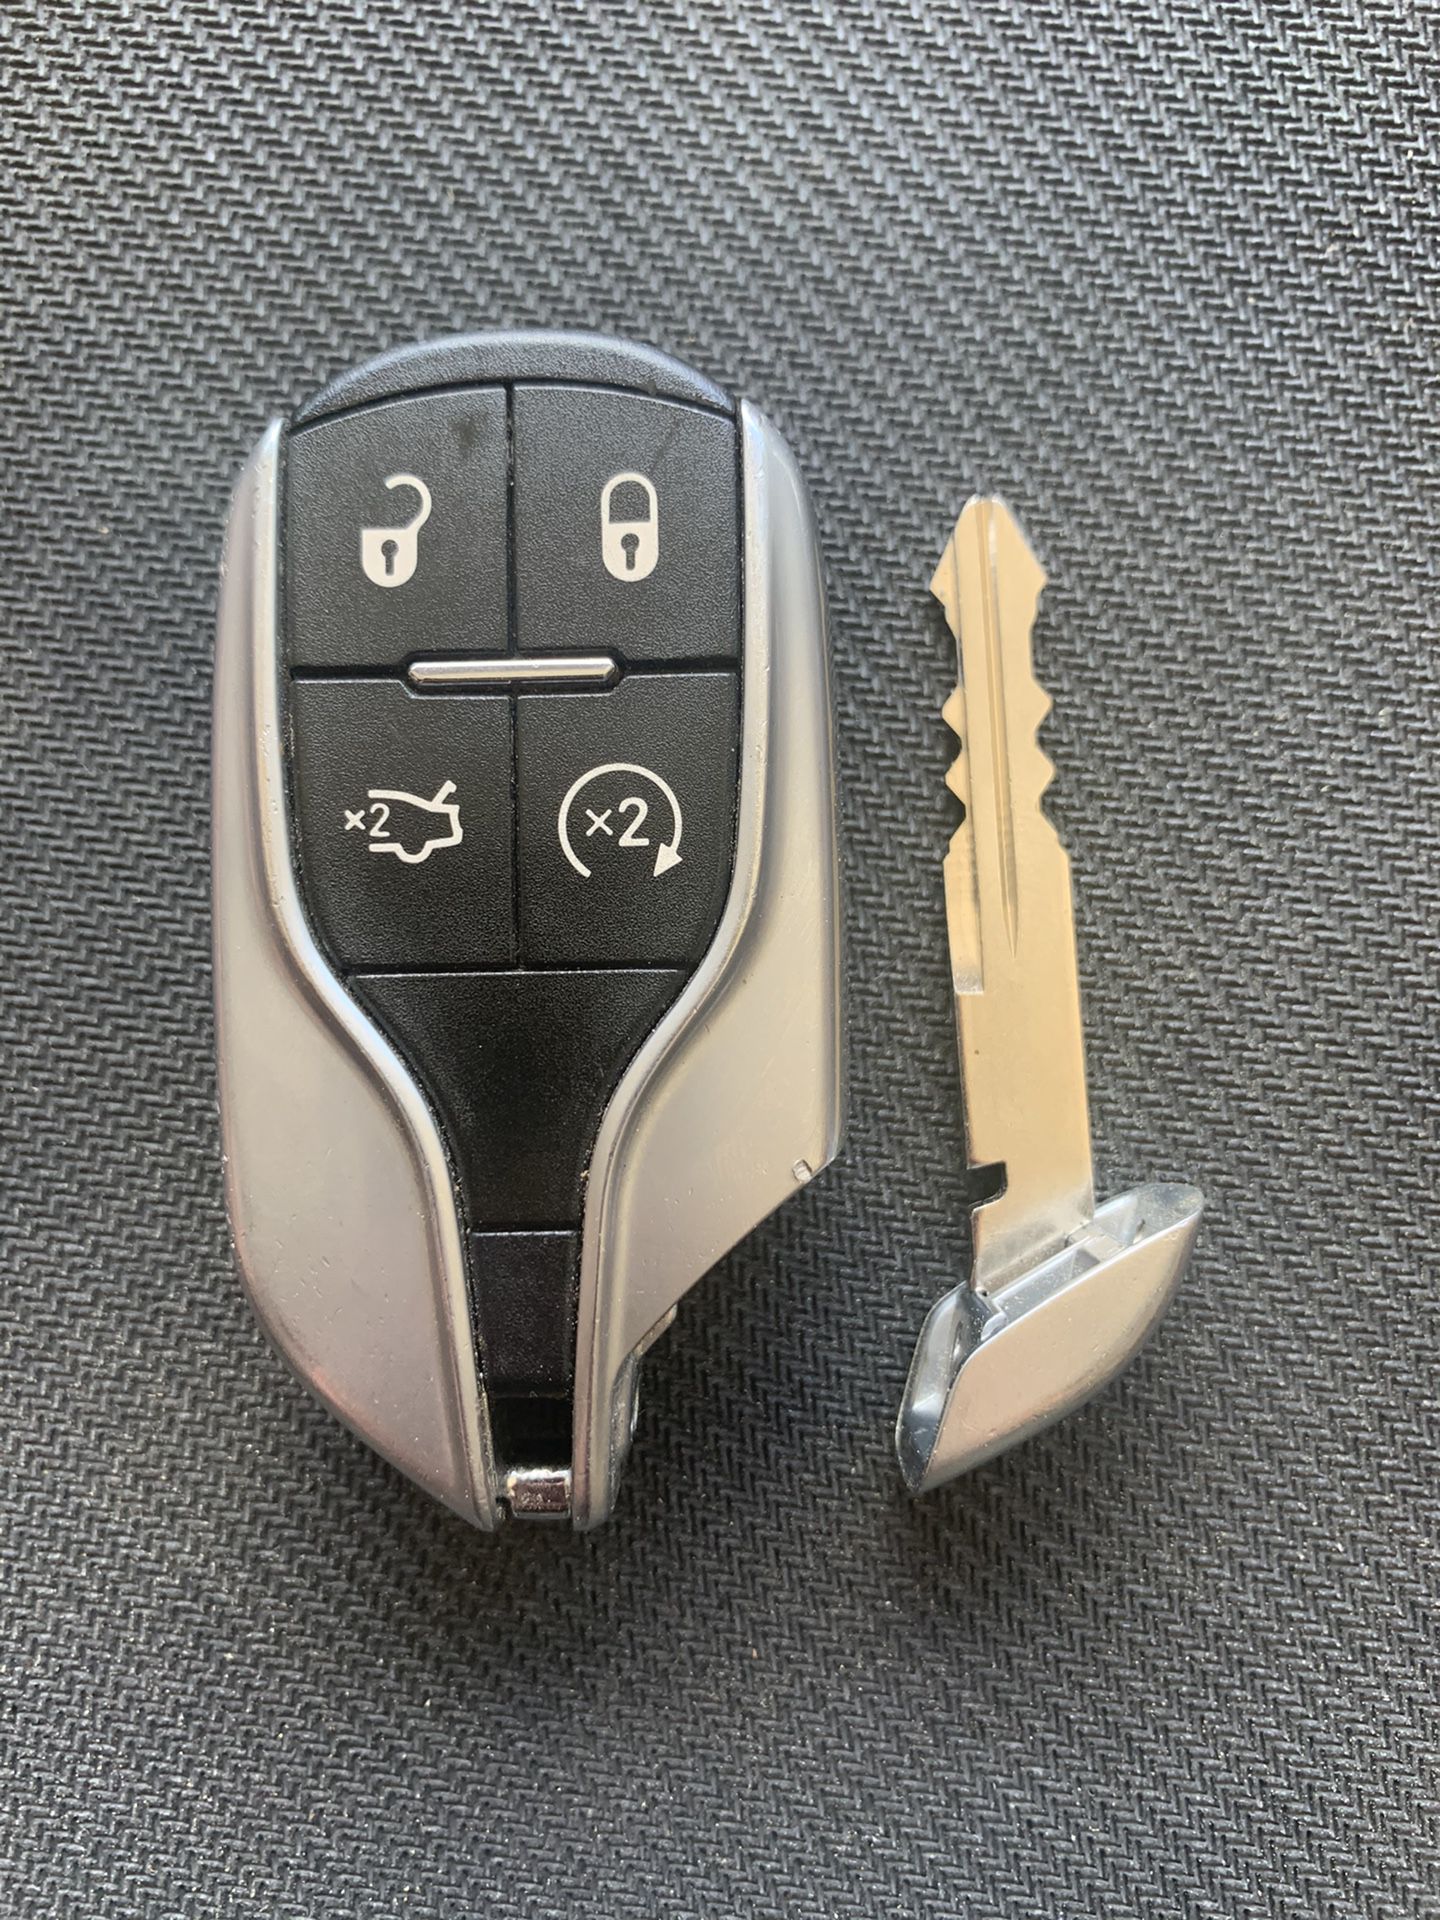 Maserati key fob